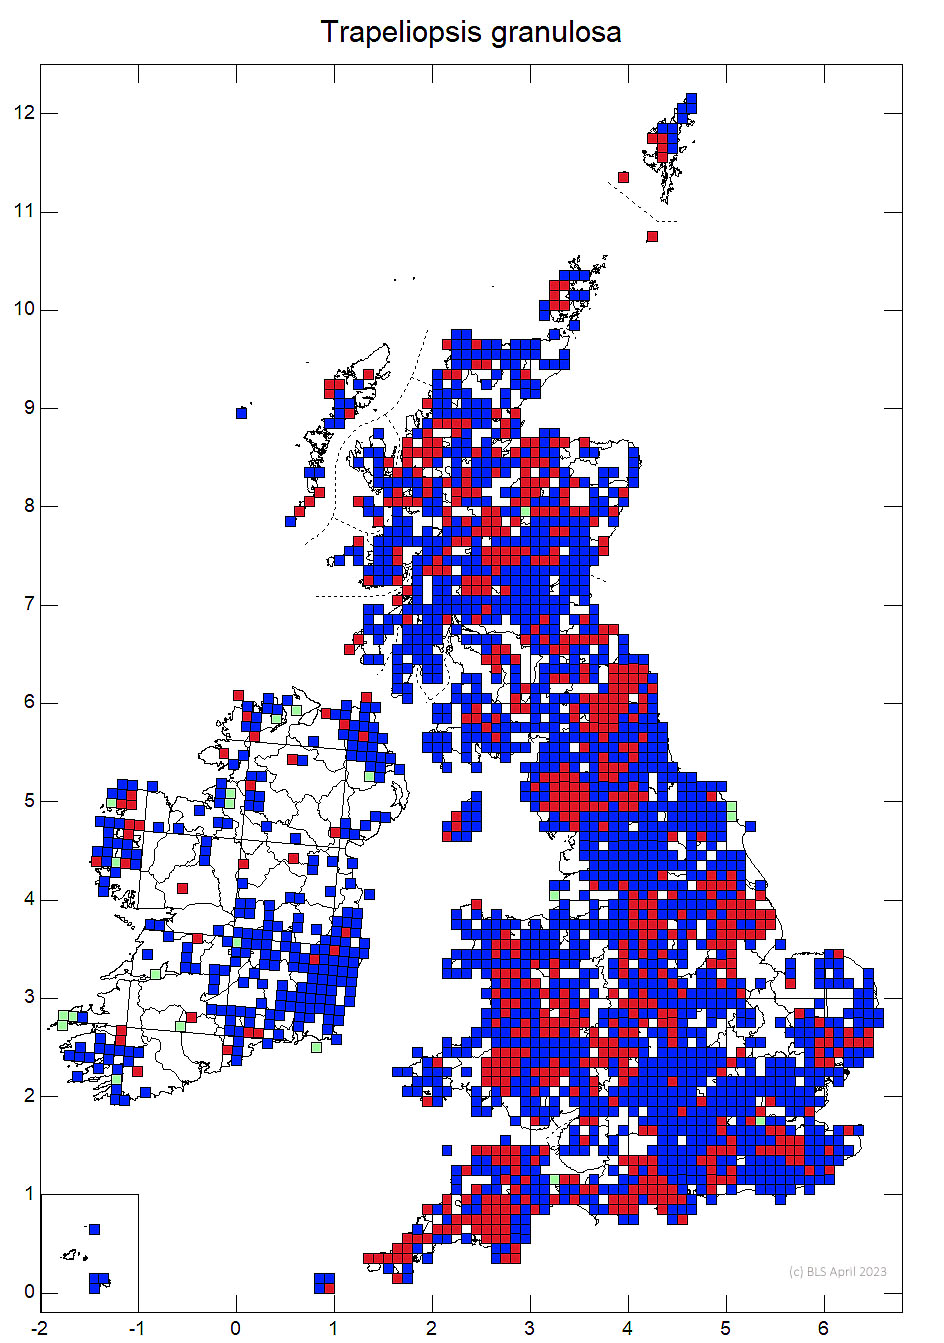 Trapeliopsis granulosa 10km sq distribution map